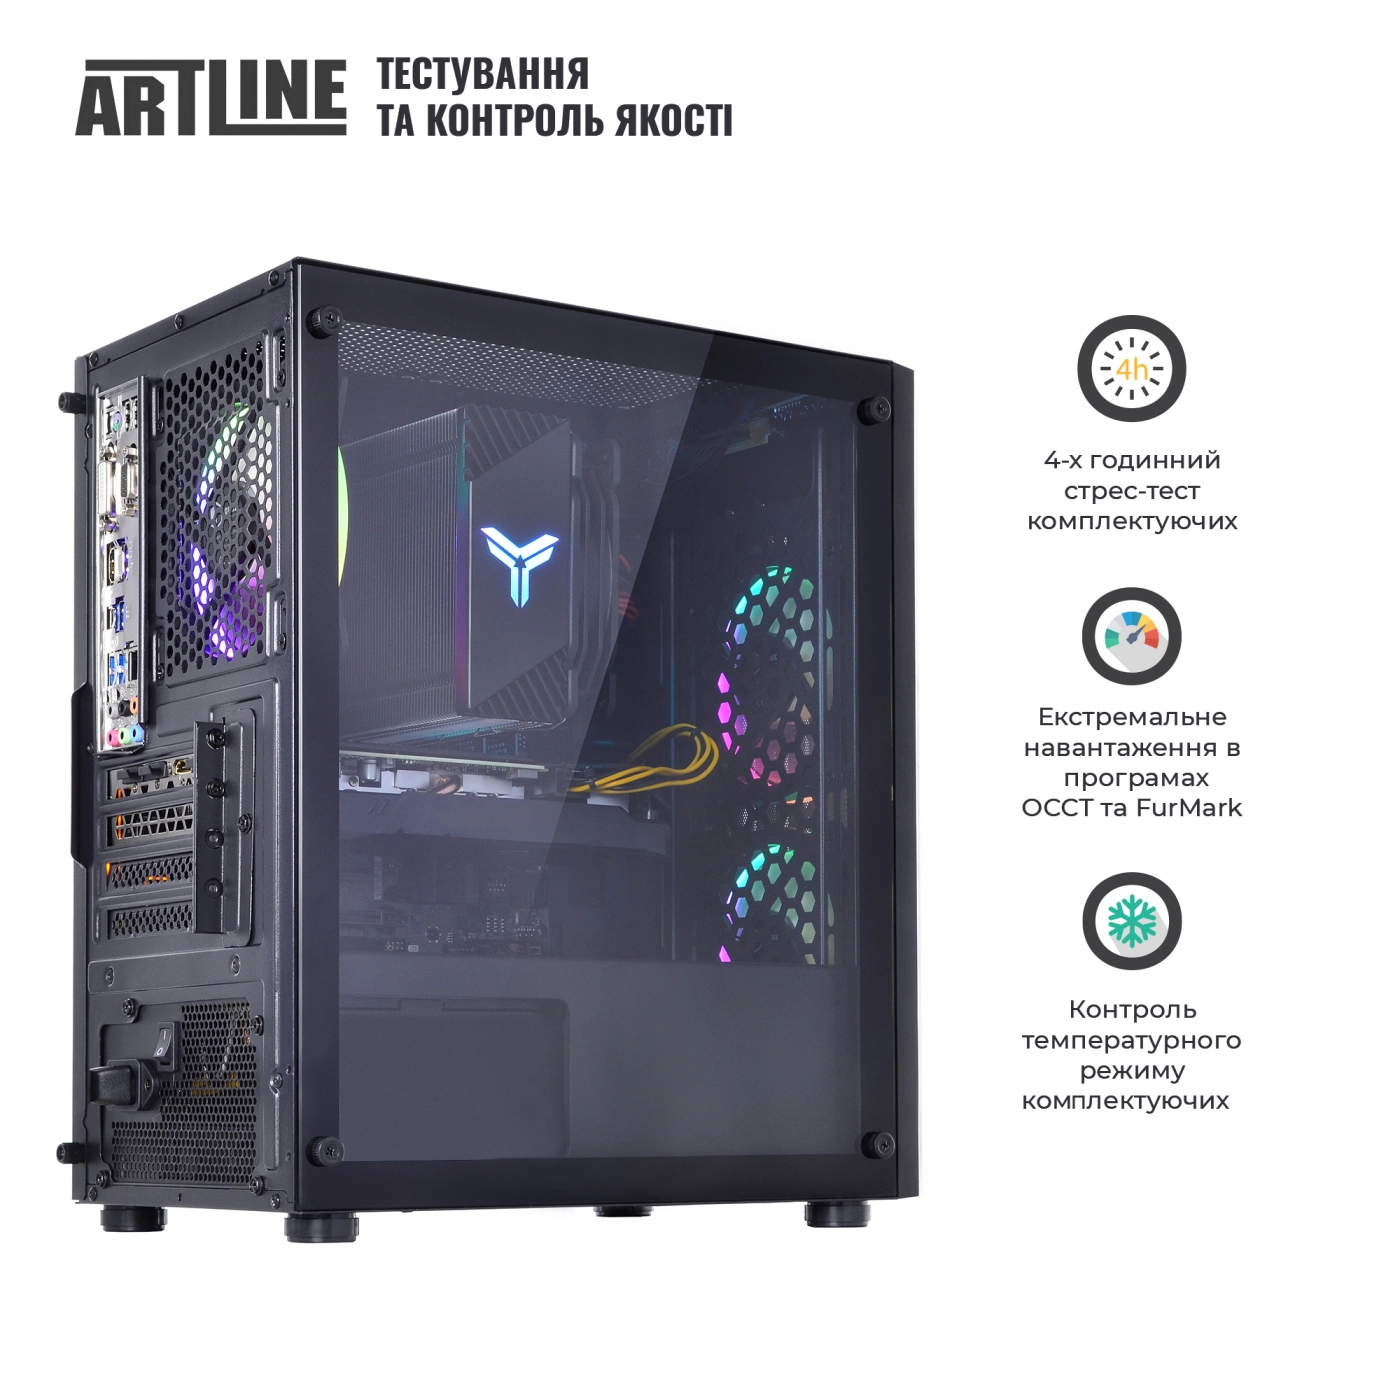 Купить Компьютер ARTLINE Gaming X71v63 - фото 9